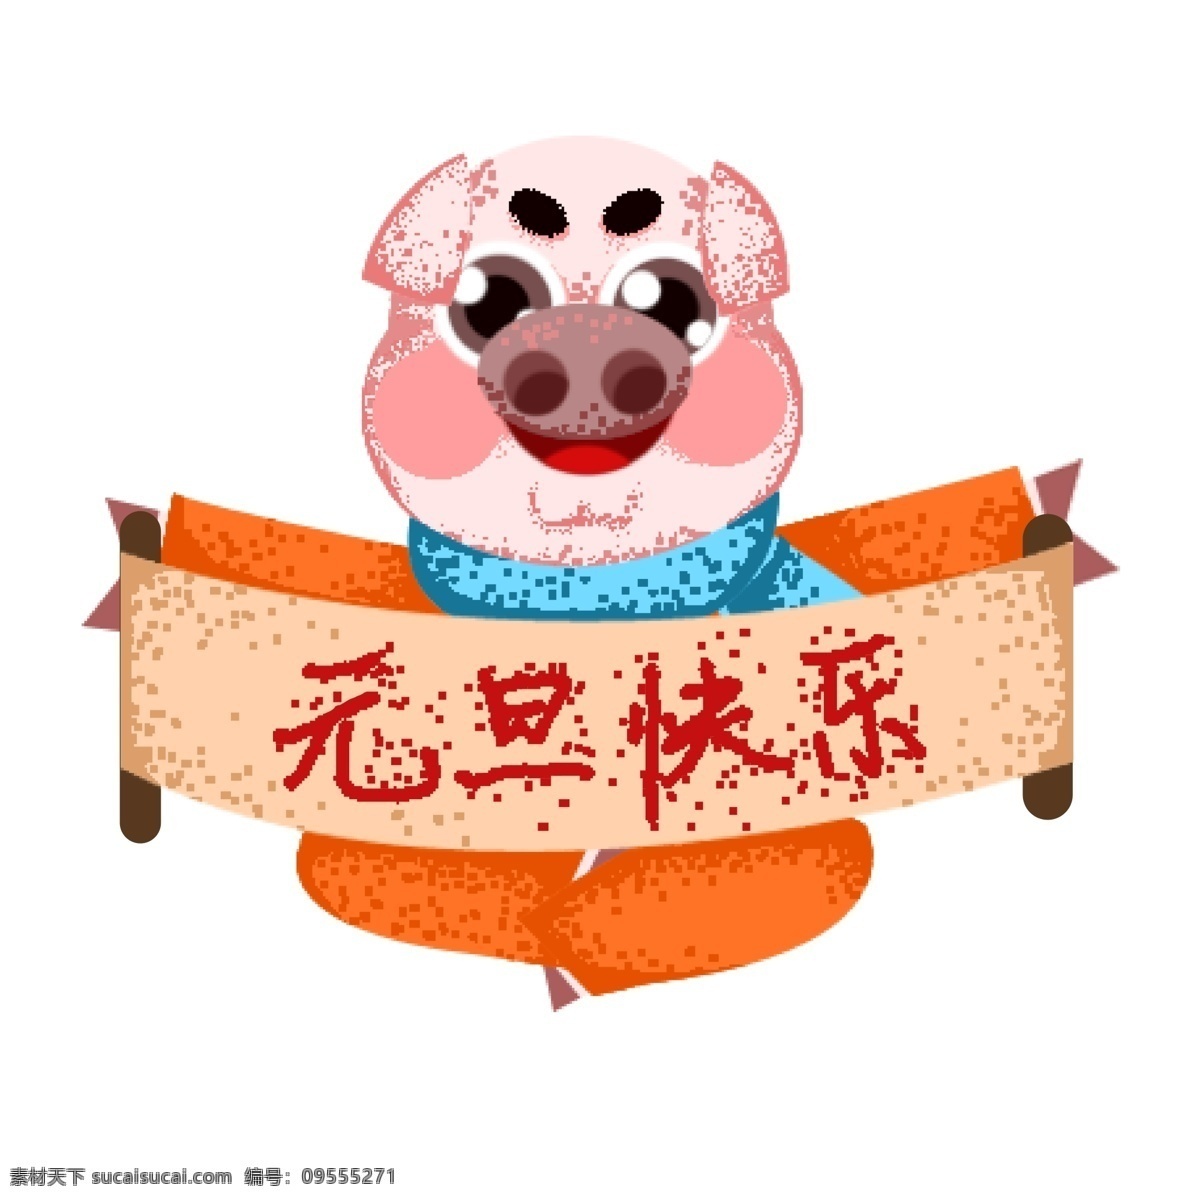 复古 手绘 元旦 快乐 小 猪 形象 元旦快乐 节日 小猪 猪年 2019年 可爱